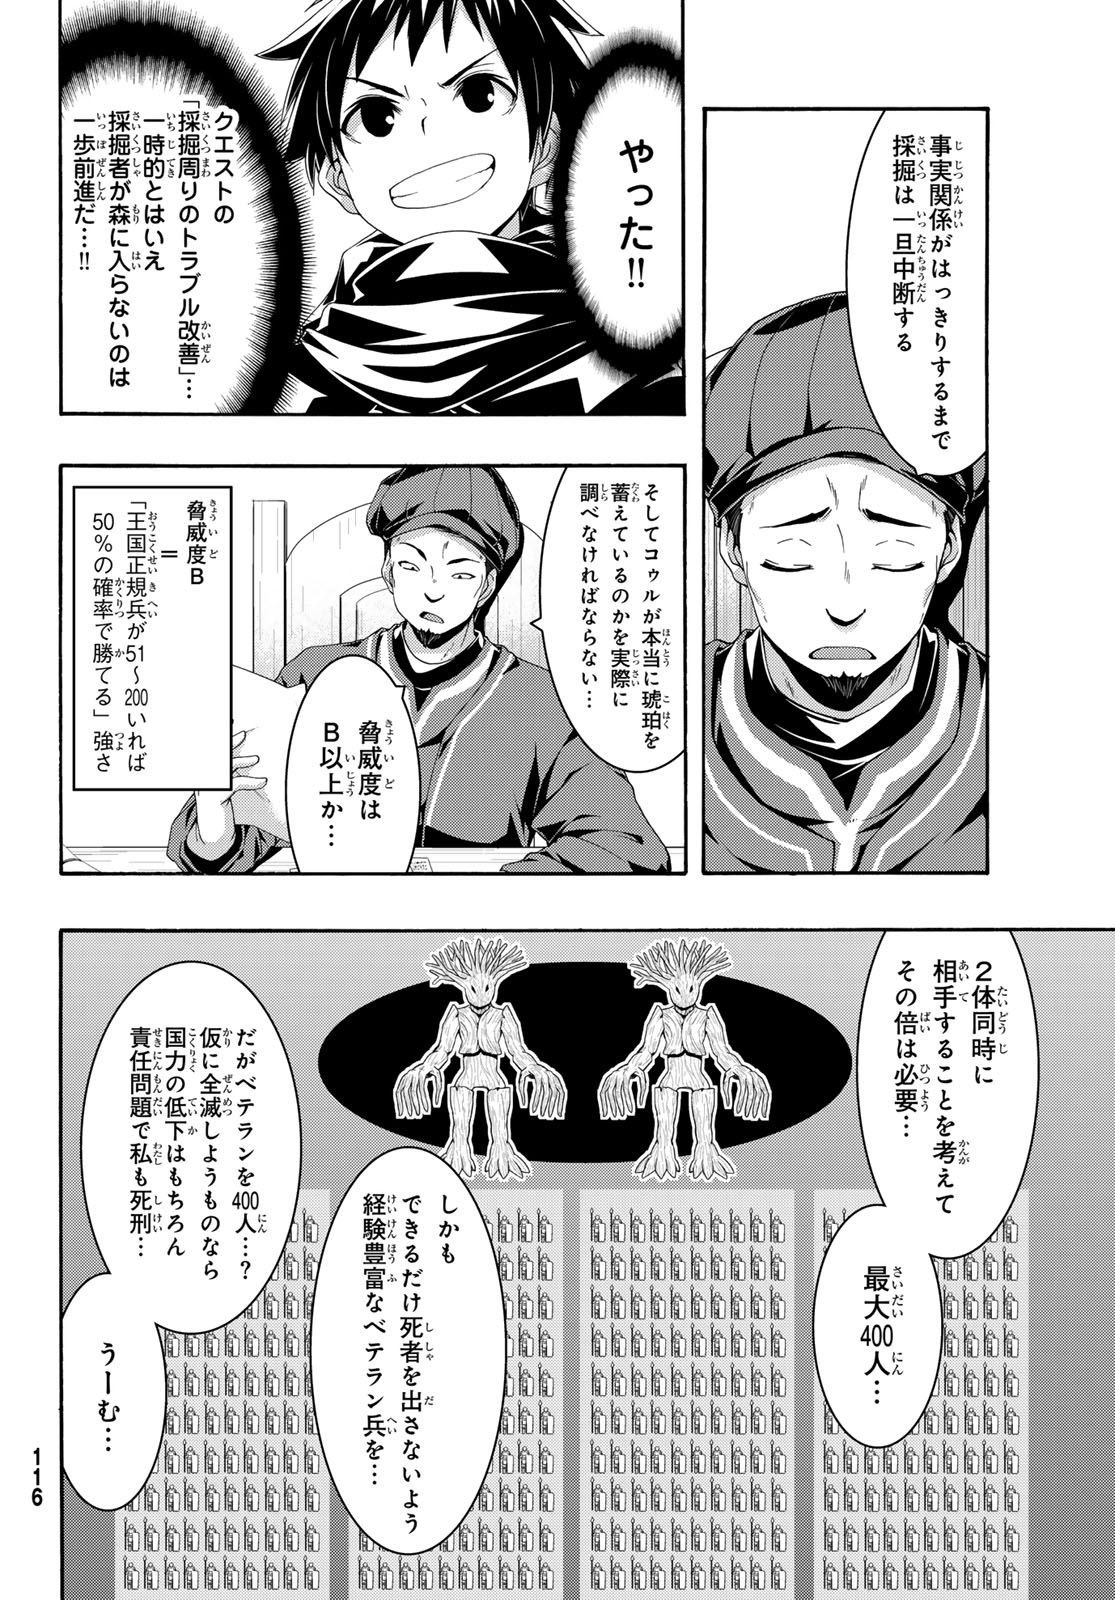 100-man no Inochi no Ue ni Ore wa Tatte Iru - Chapter 94 - Page 2